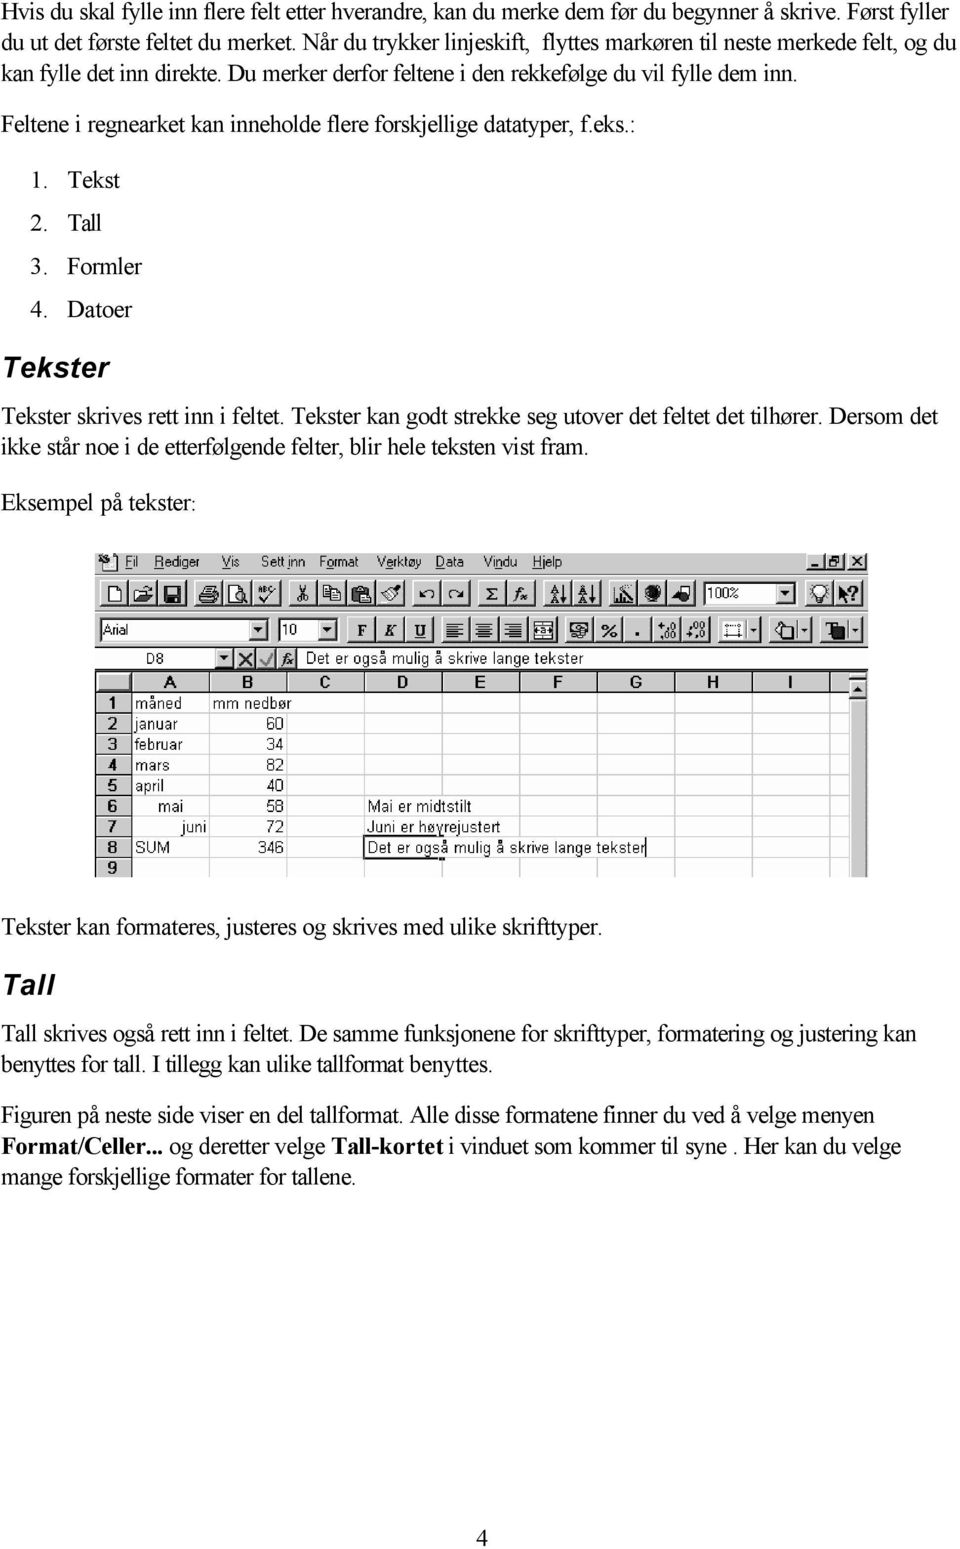 Feltene i regnearket kan inneholde flere forskjellige datatyper, f.eks.: 1. Tekst 2. Tall 3. Formler 4. Datoer Tekster Tekster skrives rett inn i feltet.